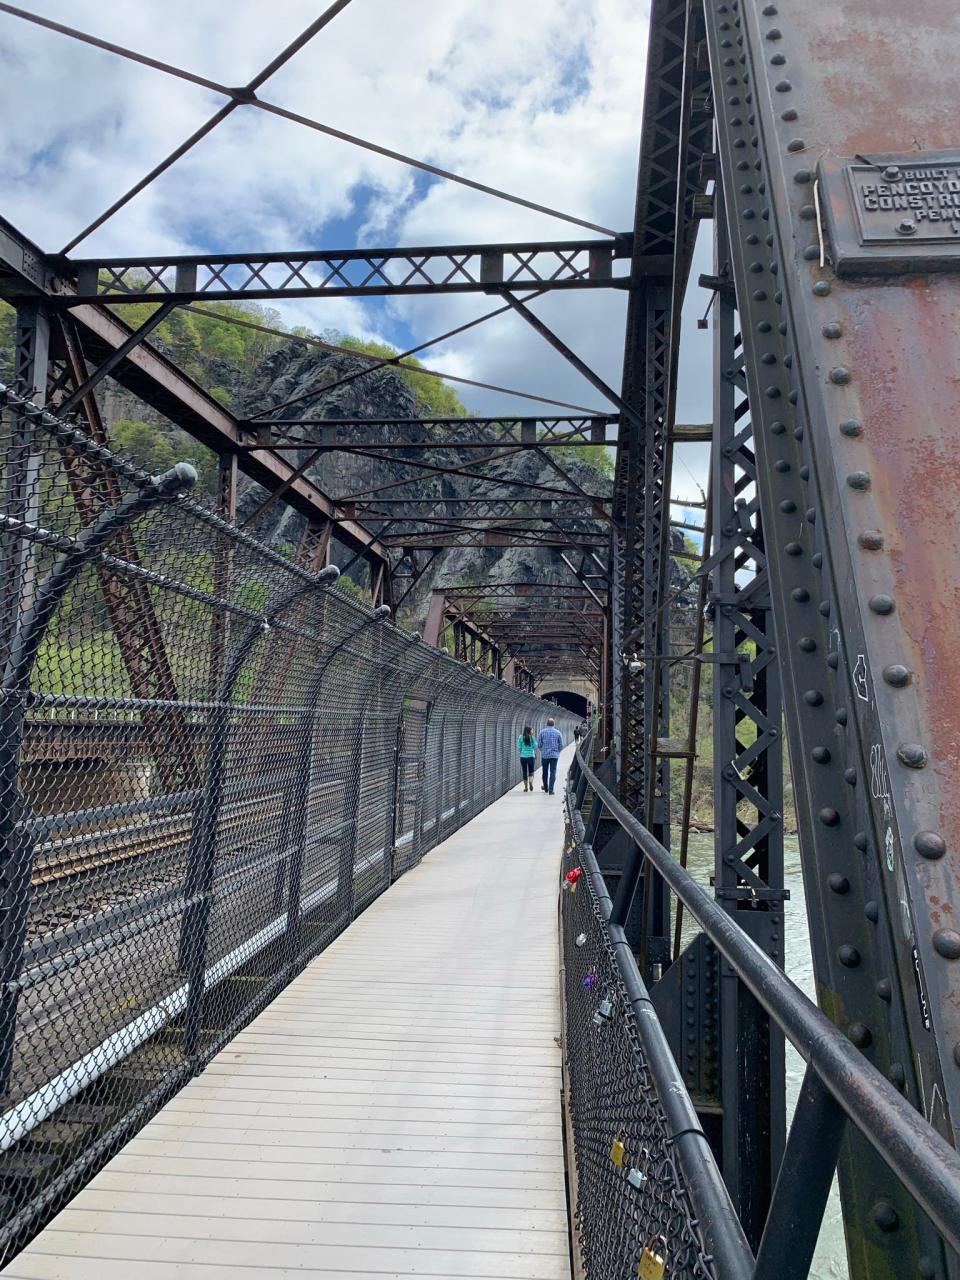 Walkers cross a bridge along the Appalachian Trail.